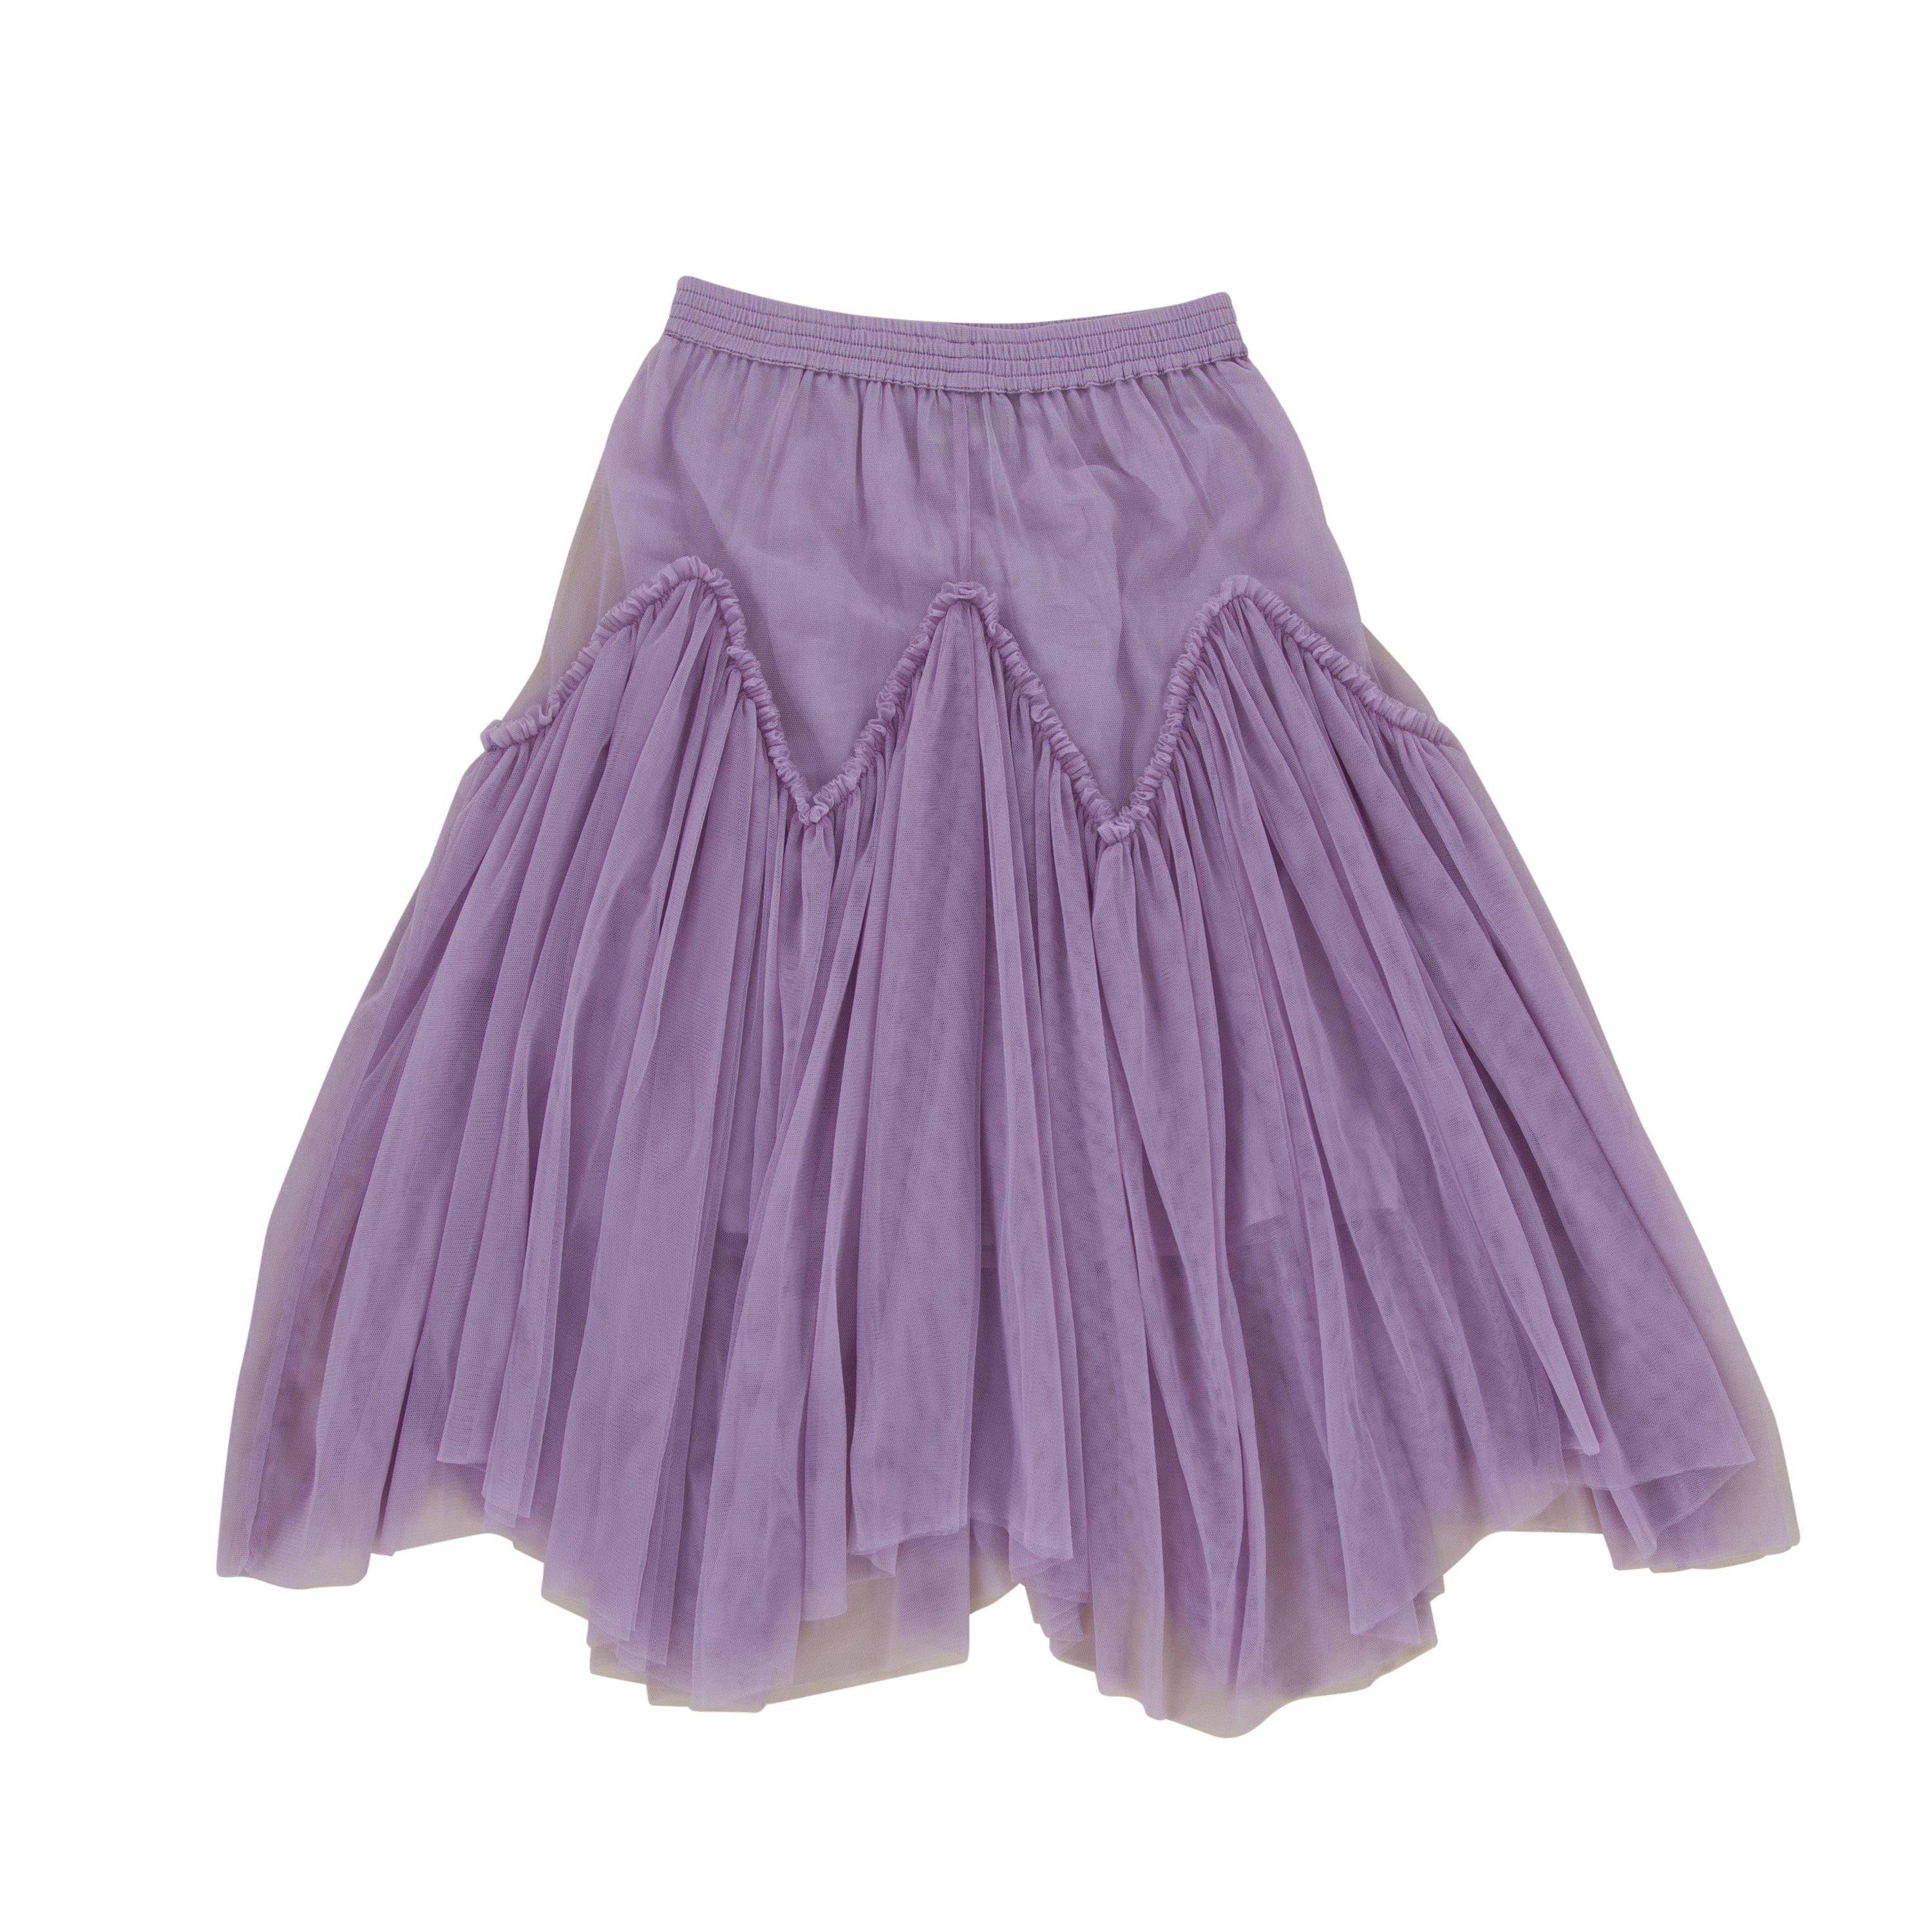 Peggy - Harper Skirt - Lavender